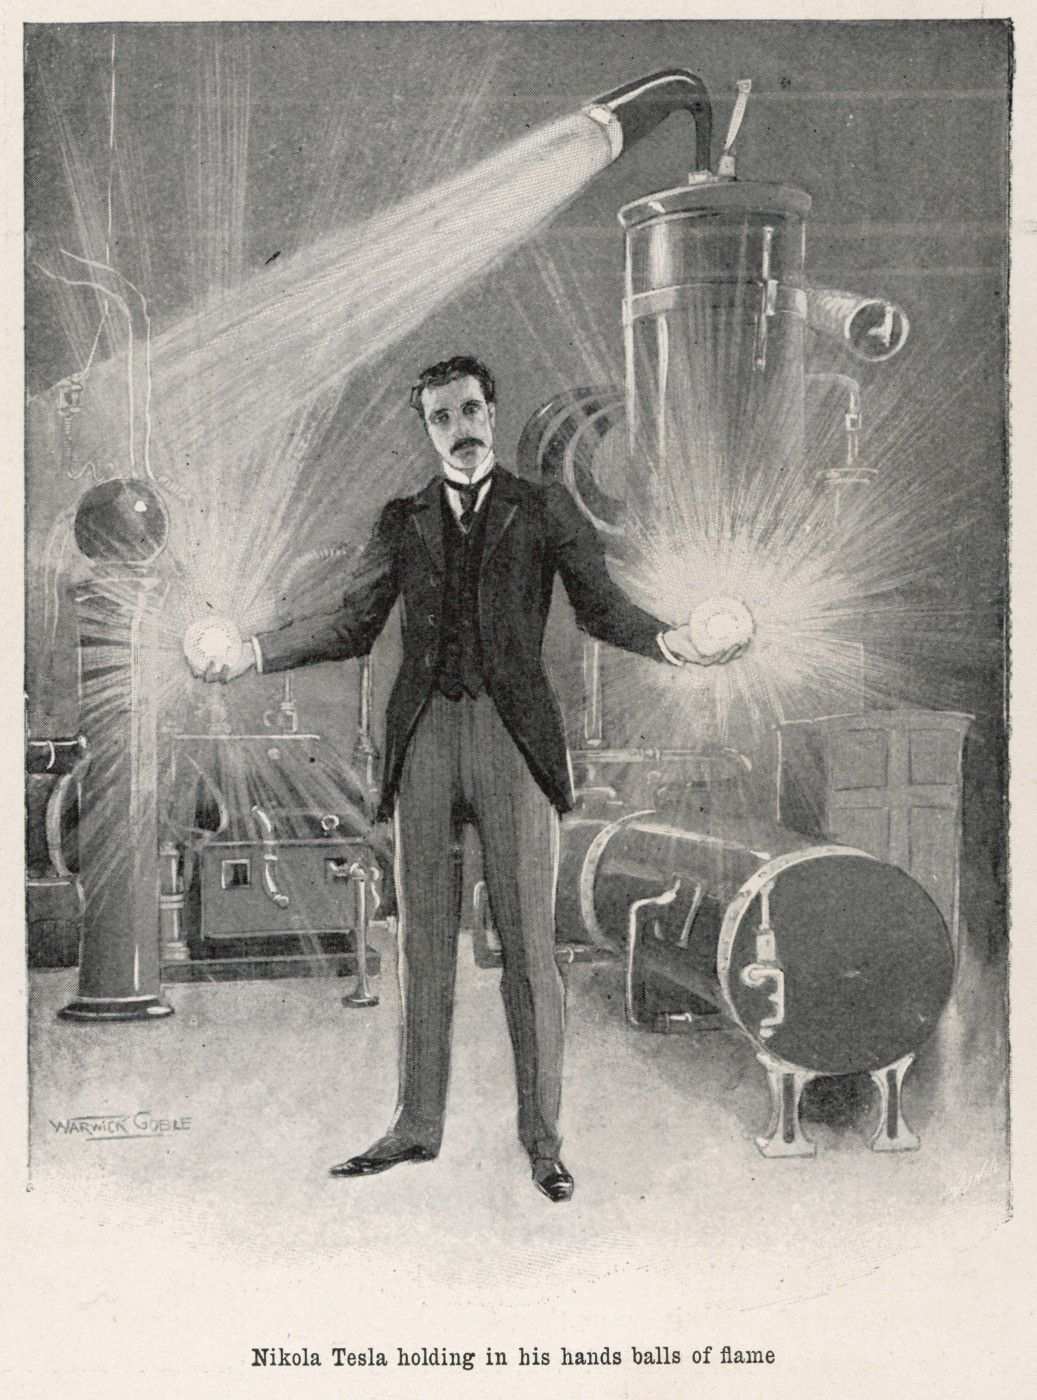 Nikola Tesla, yalnızca son zamanlarda erişilen süper teknolojileri zaten ortaya çıkardı 1